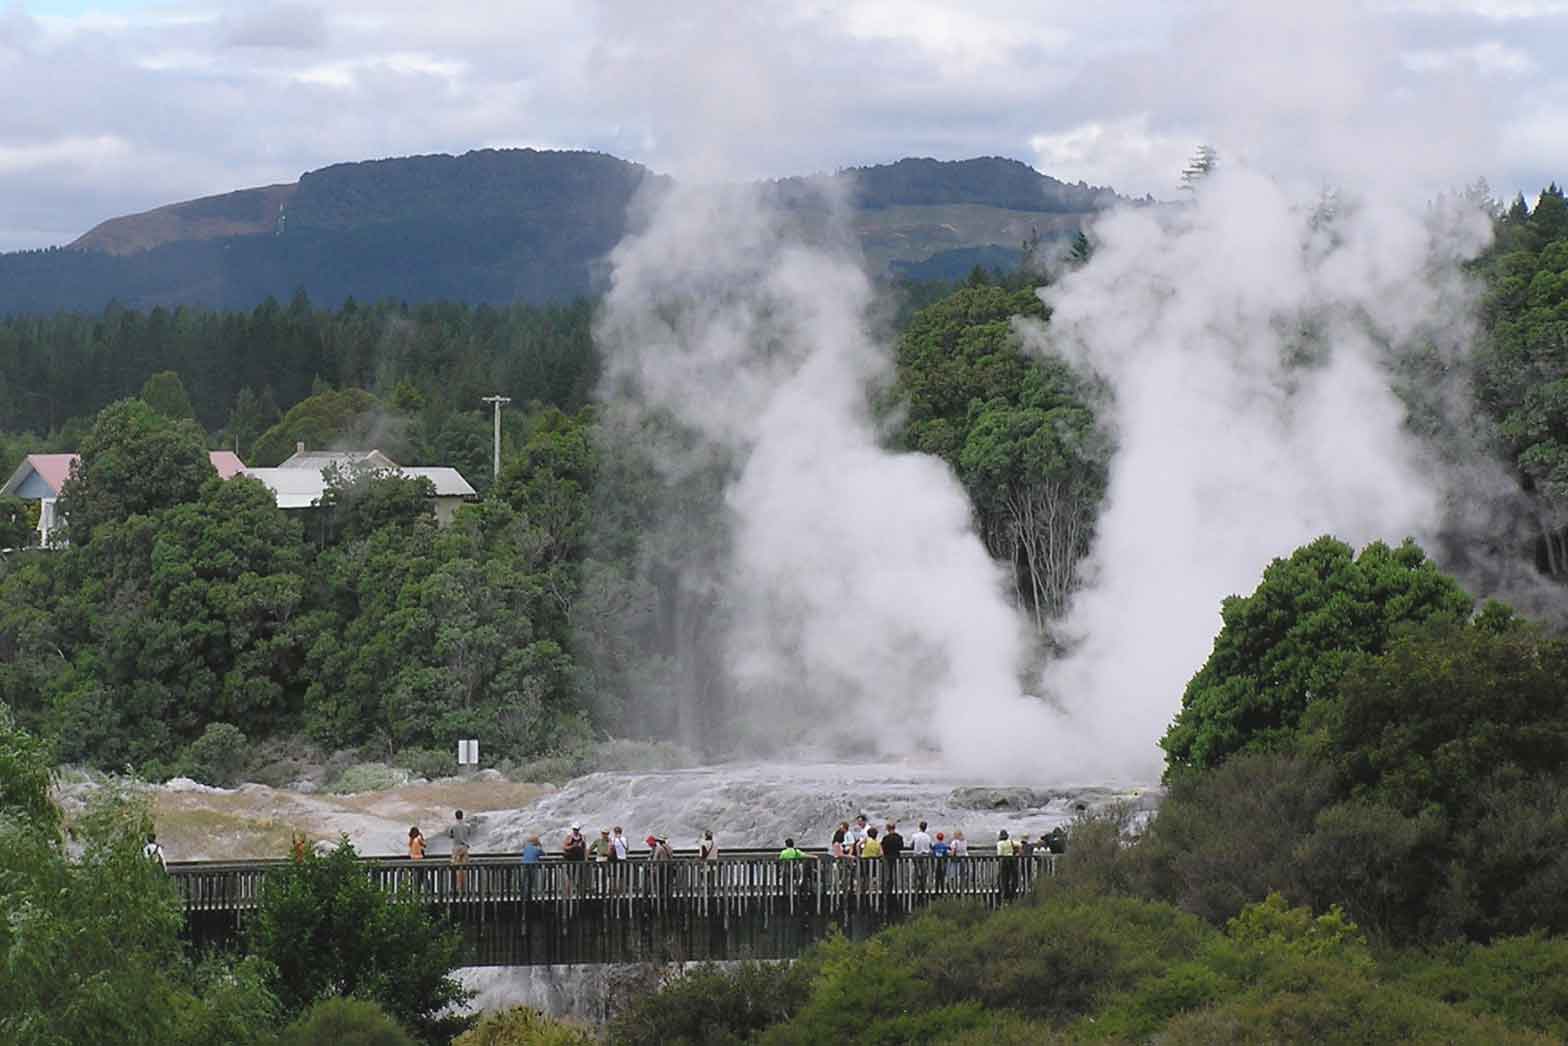 The geysers at Rotorua